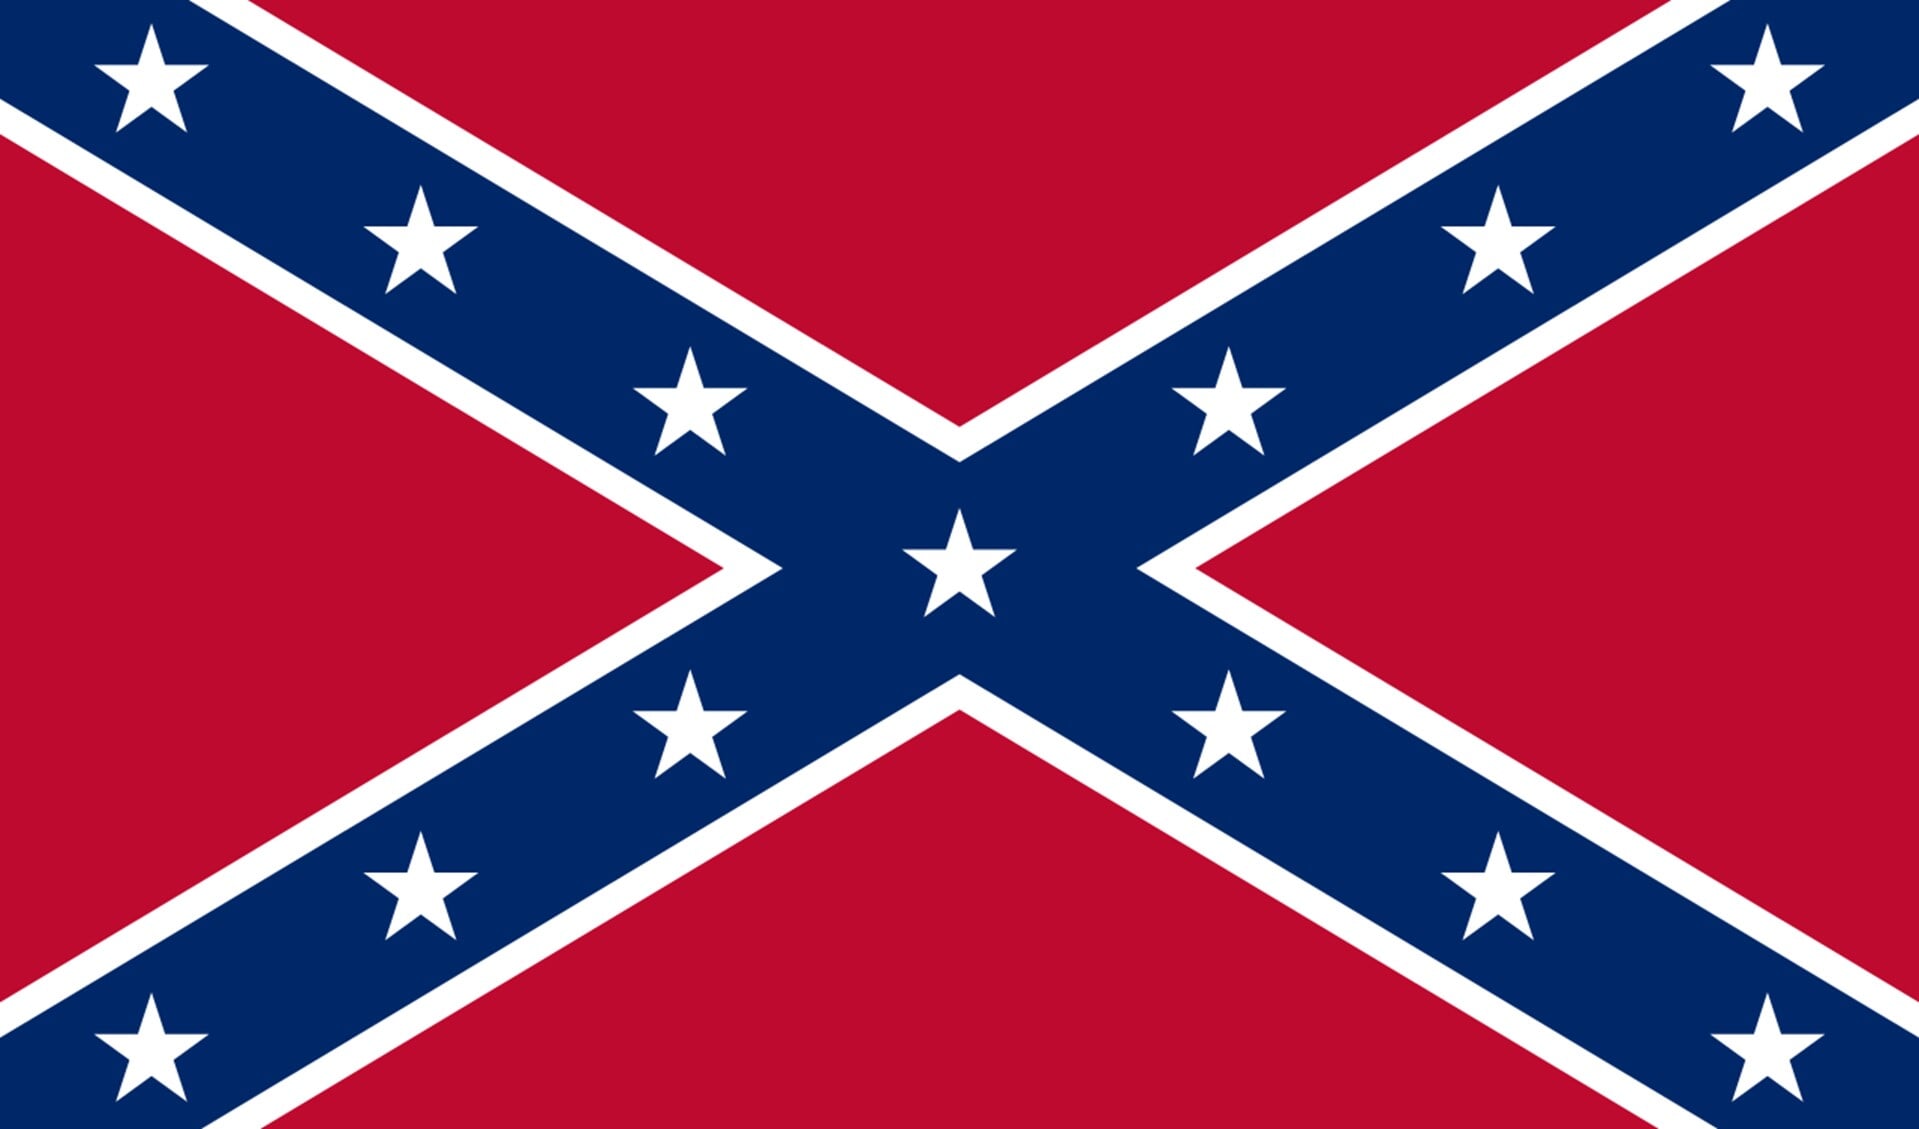 De Achterhoekse vlag lijkt wat op die van de oude Confederatie, de zuidelijke staten van Amerika. Afbeelding: PR